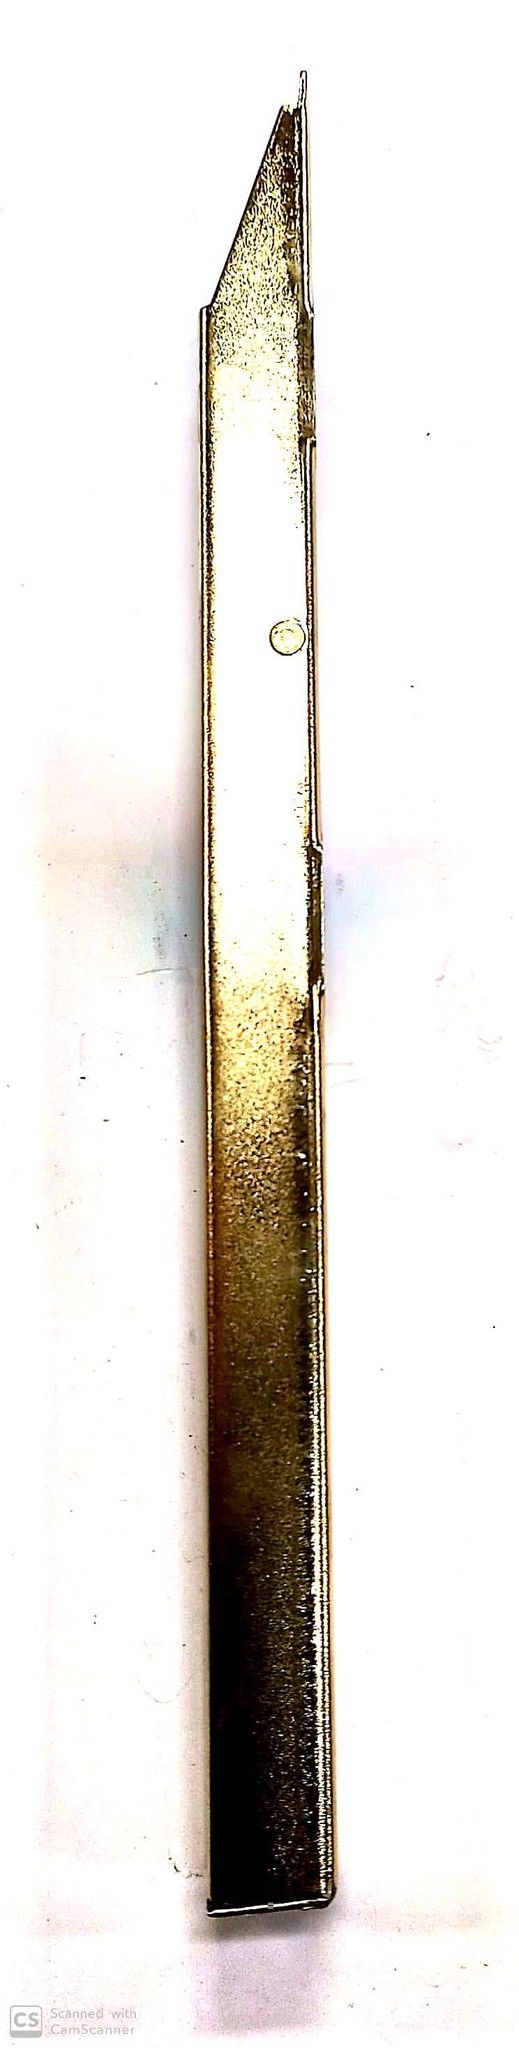 Catenaccio a leva cm 20 in ferro ottonato AGB 320